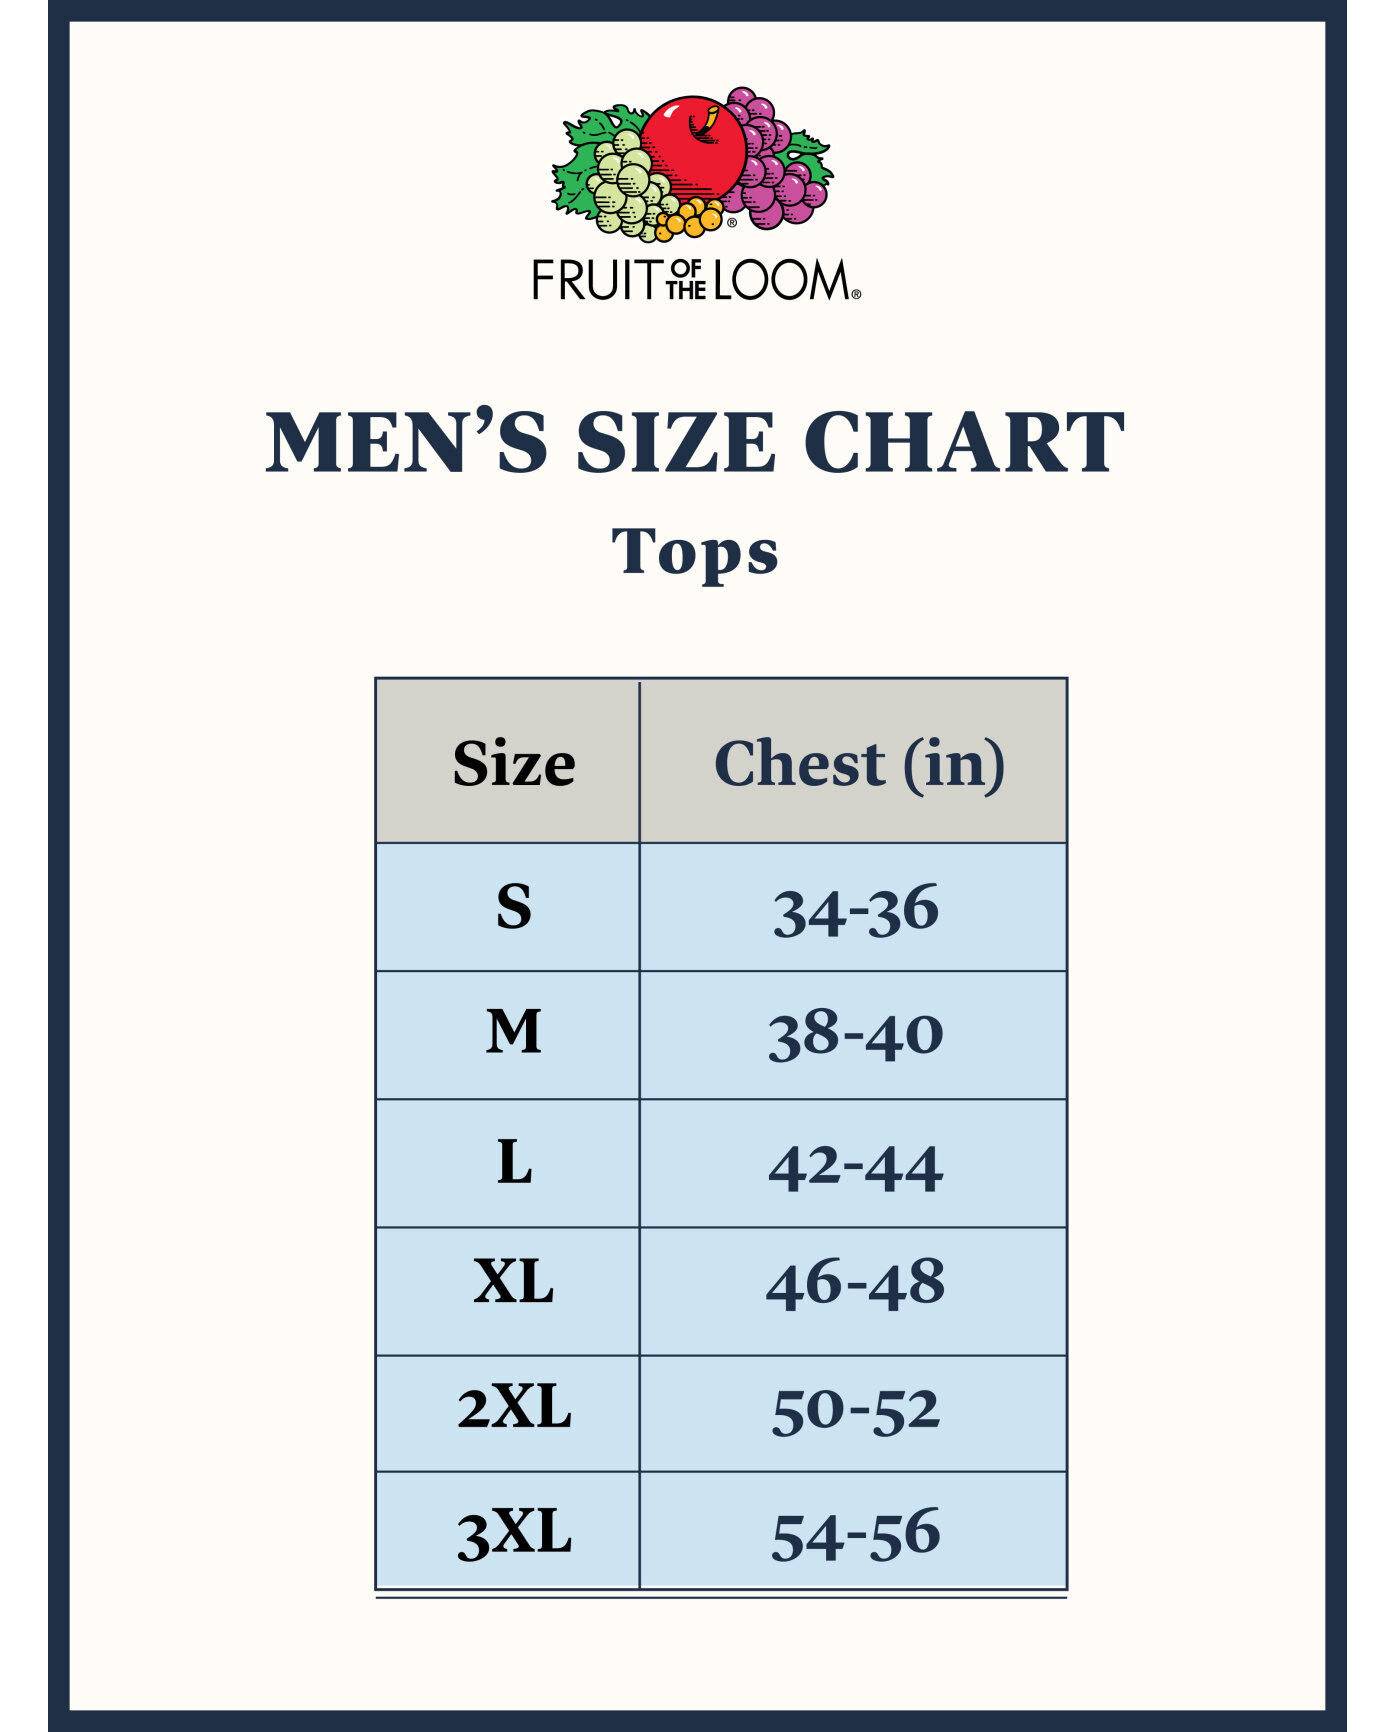 men's tank top size chart